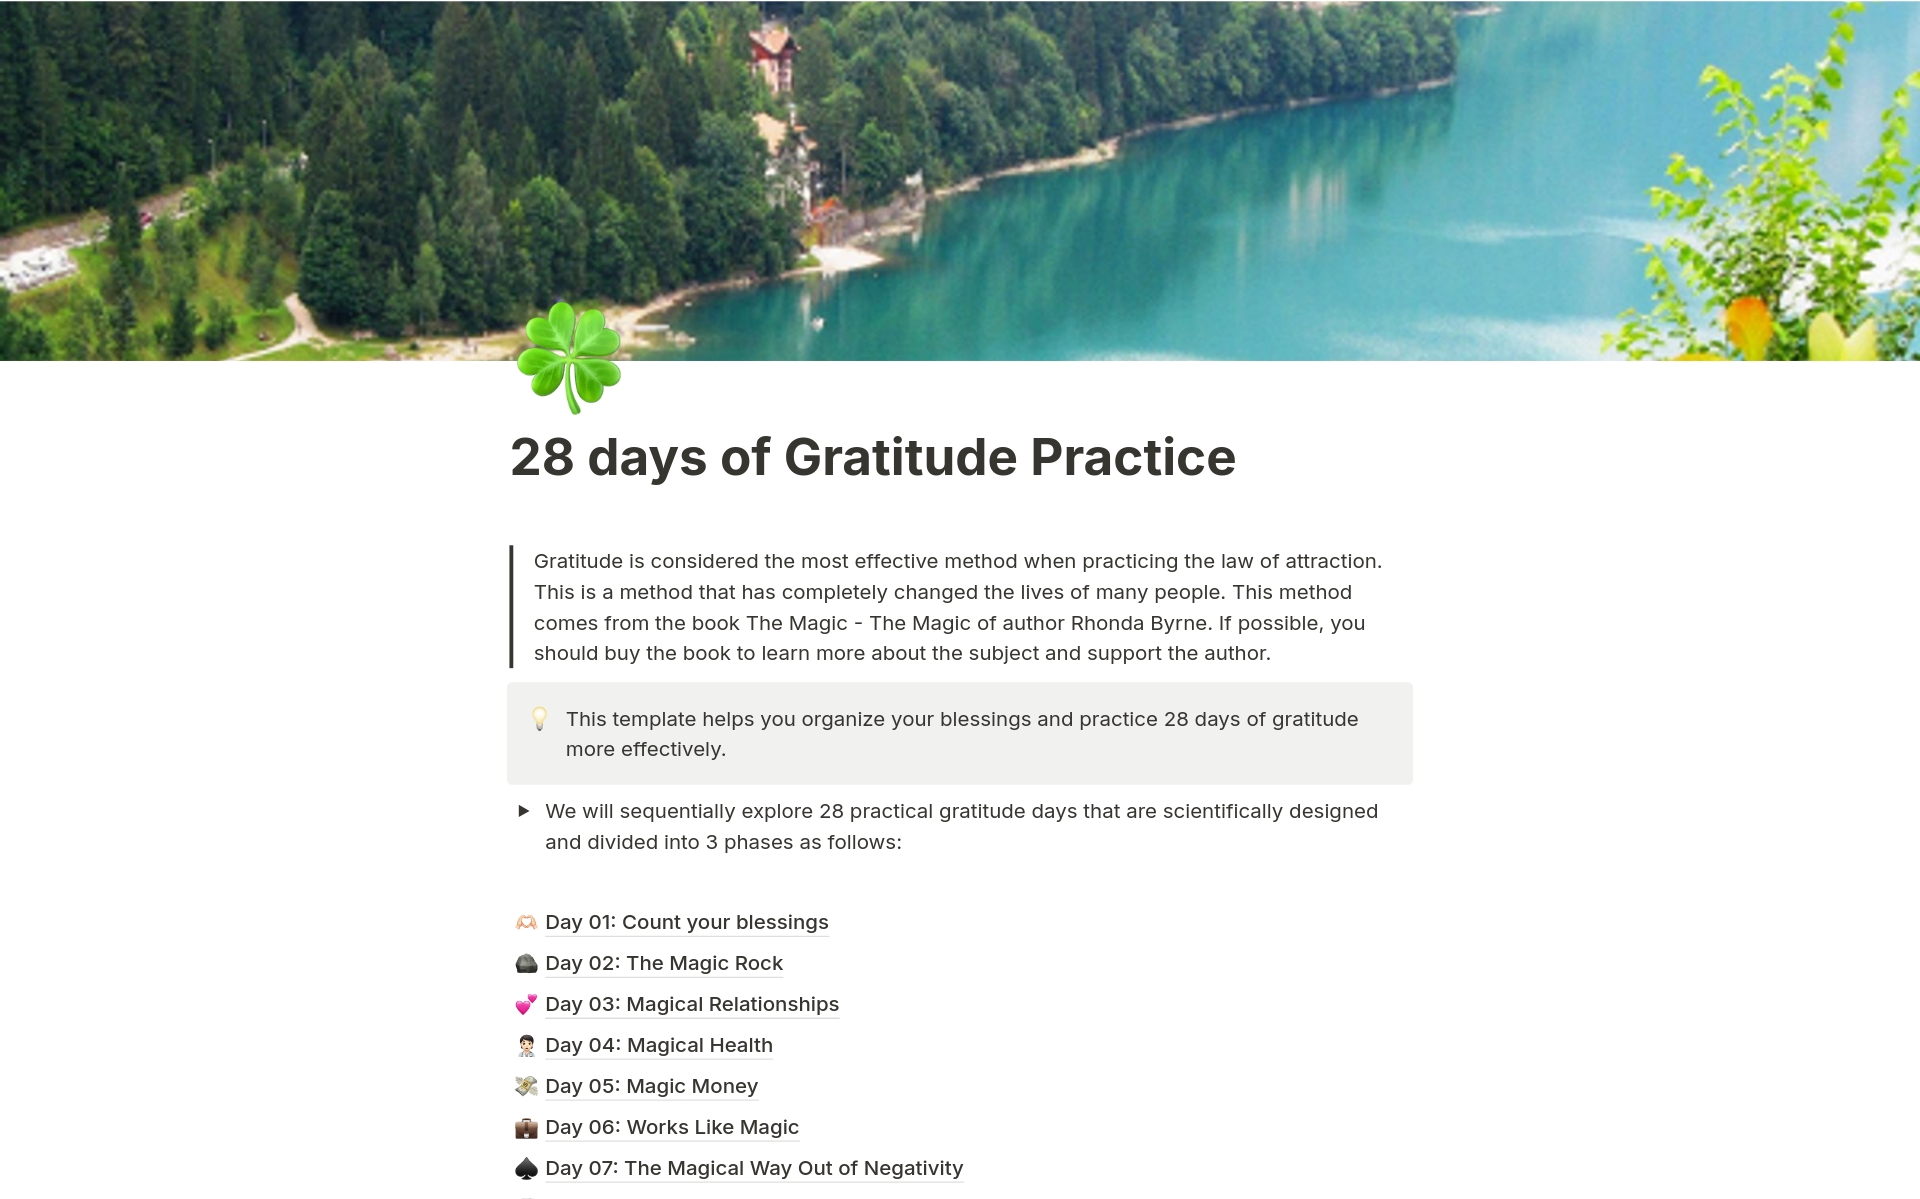 Uma prévia do modelo para 28 days of Gratitude Practice